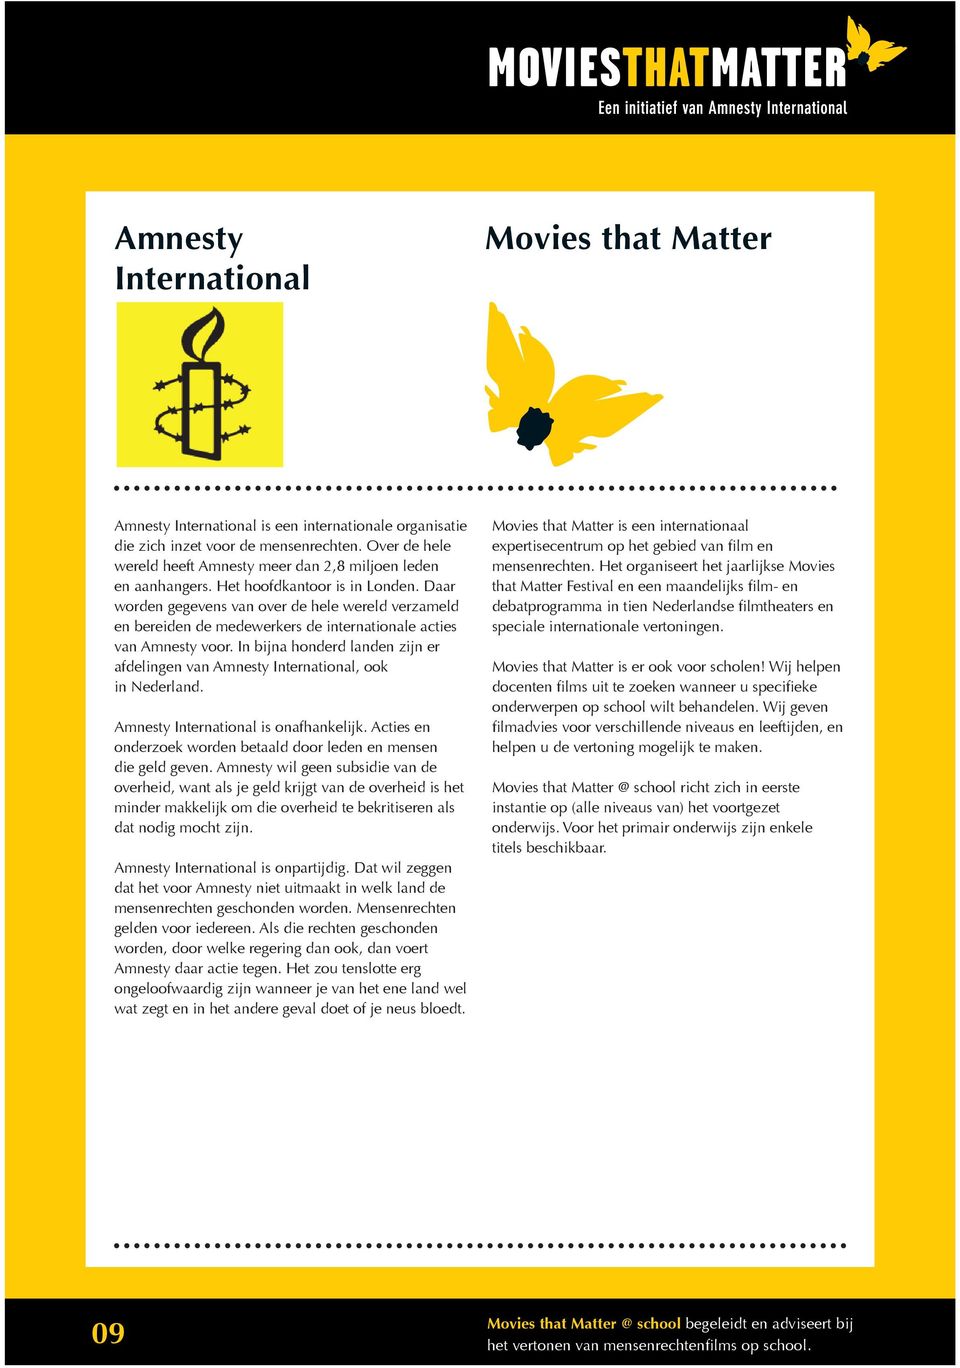 Daar worden gegevens van over de hele wereld verzameld en bereiden de medewerkers de internationale acties van Amnesty voor.